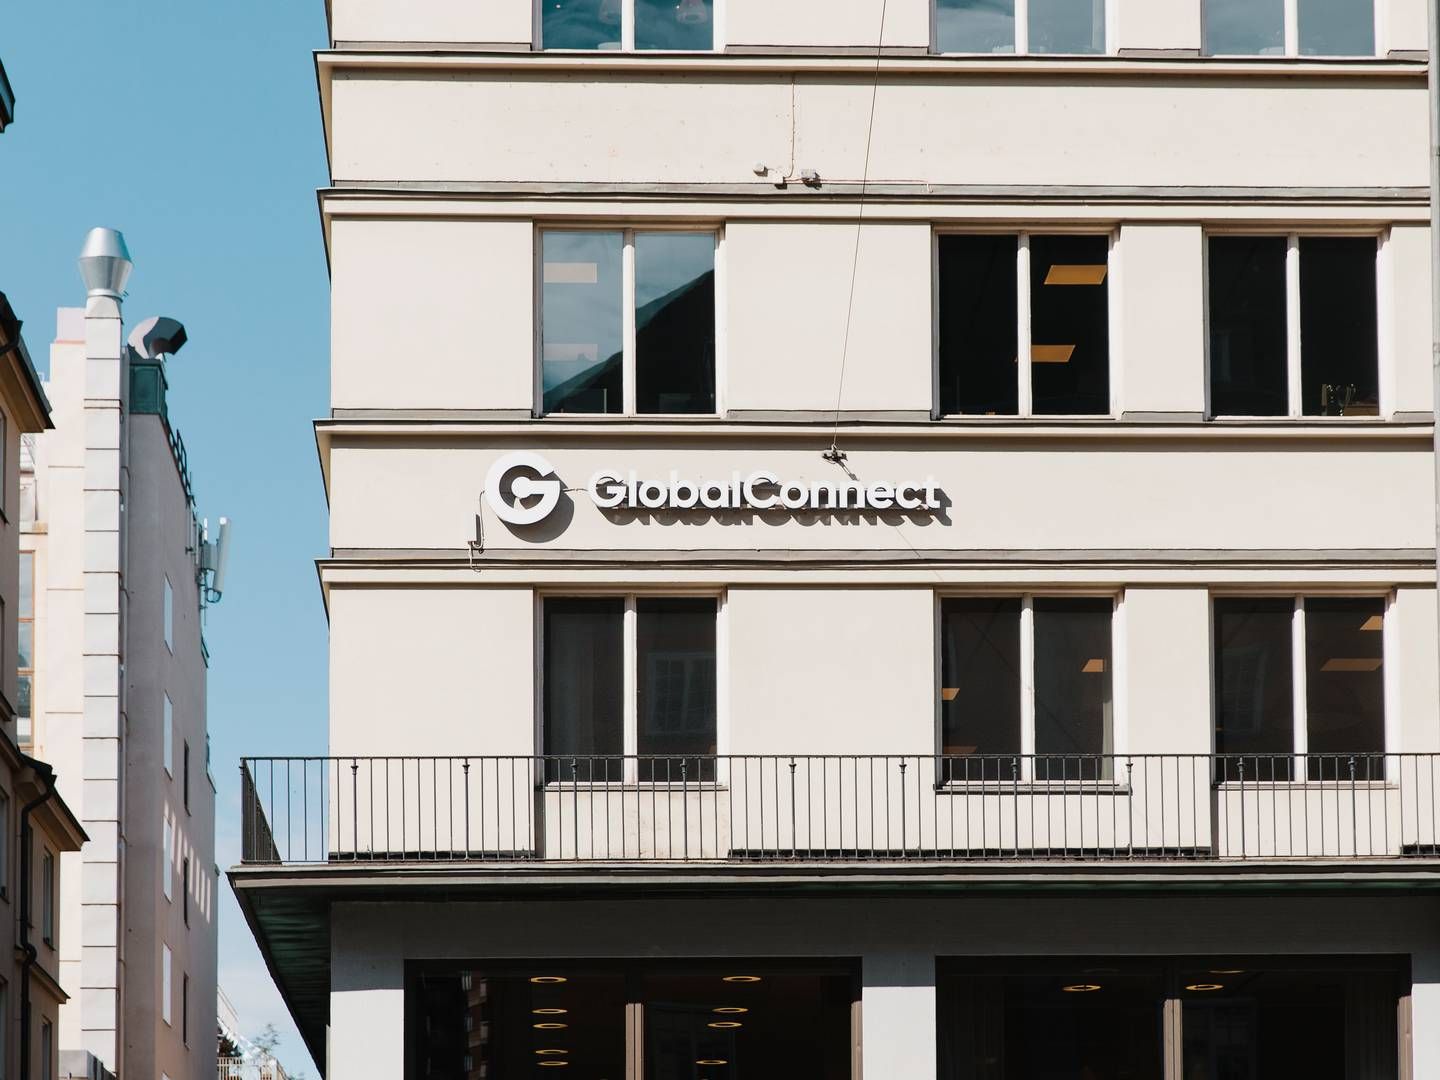 Navnet Globalconnect stammer fra danske Global Connect, der blev stiftet af Niels Zibrandtsen i slutningen af 1990'erne. I 2016 indgik han en aftale med den svenske kapitalfond EQT om et salg af 80 pct. af aktierne i Global Connect. I 2018 solgte han også de sidste 20 pct. af selskabet til kapitalfonden. Globalconnect har i dag hovedkontor i Stockholm (billede) | Foto: Globalconnect / Pr